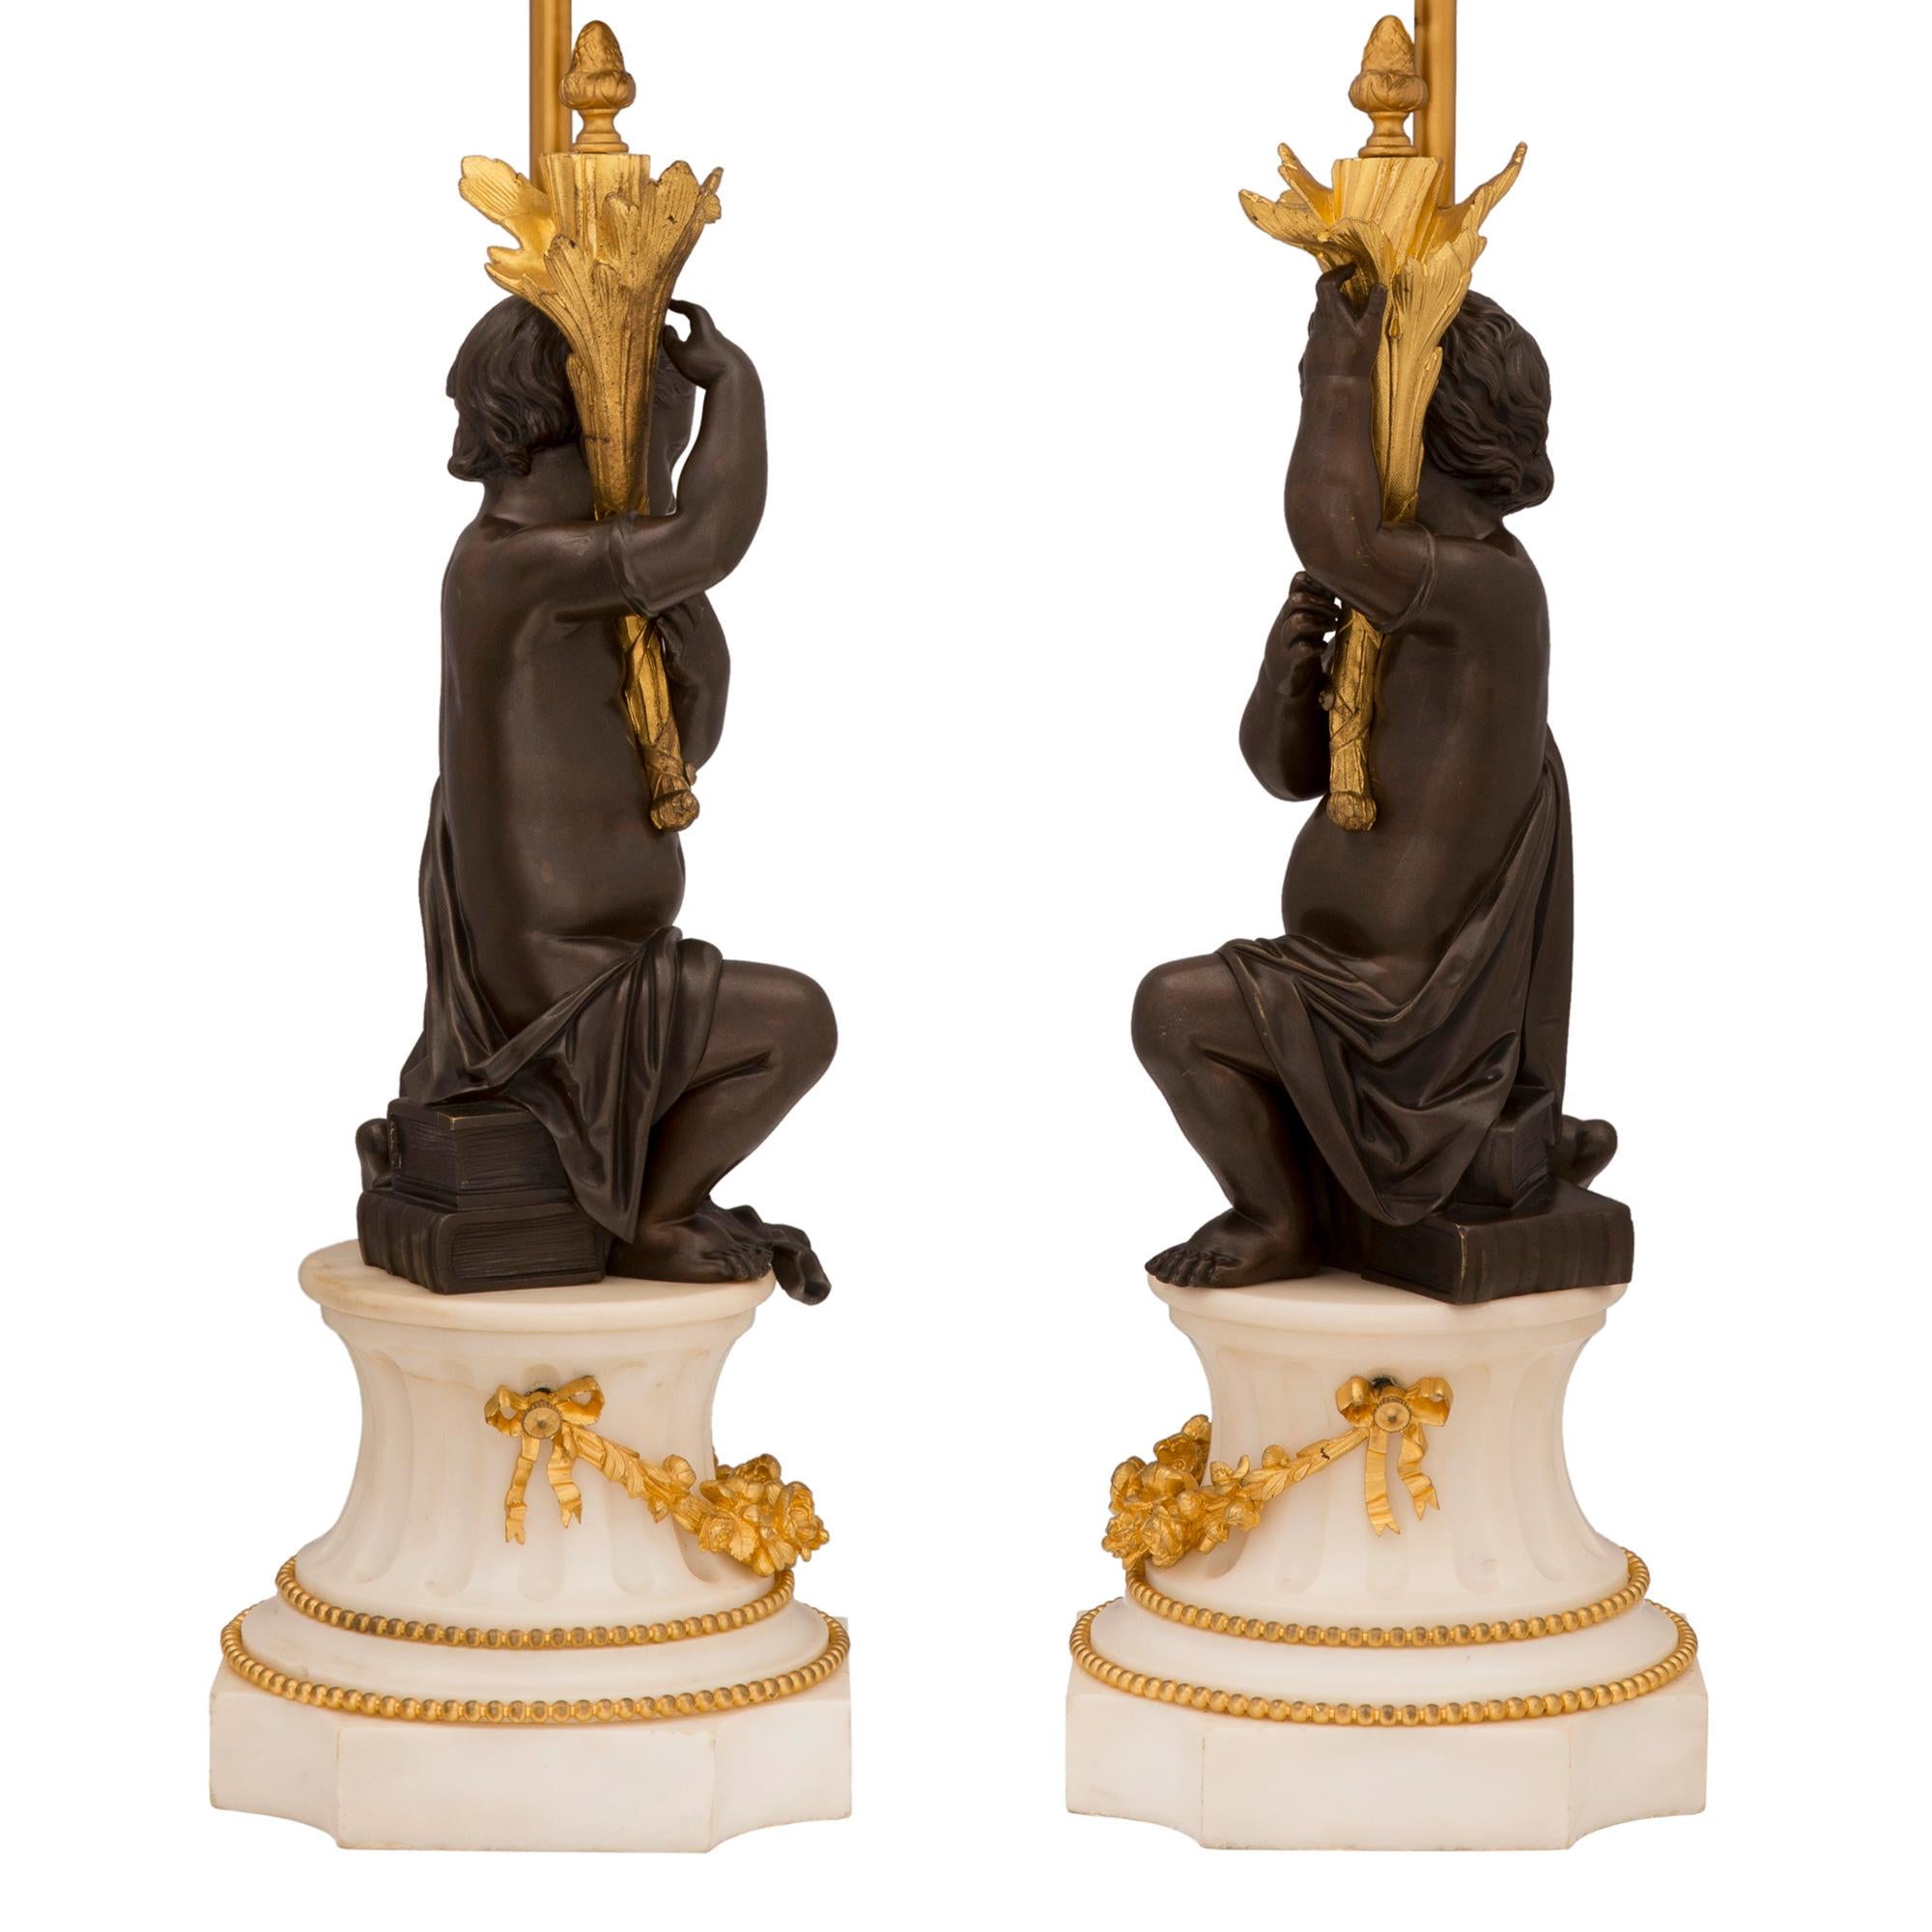 Une paire très élégante de lampes françaises du 19ème siècle, de style Louis XVI, en bronze patiné, bronze doré et marbre blanc de Carrare. Chaque lampe est surélevée par une base carrée en marbre de Carrare blanc aux angles concaves et un